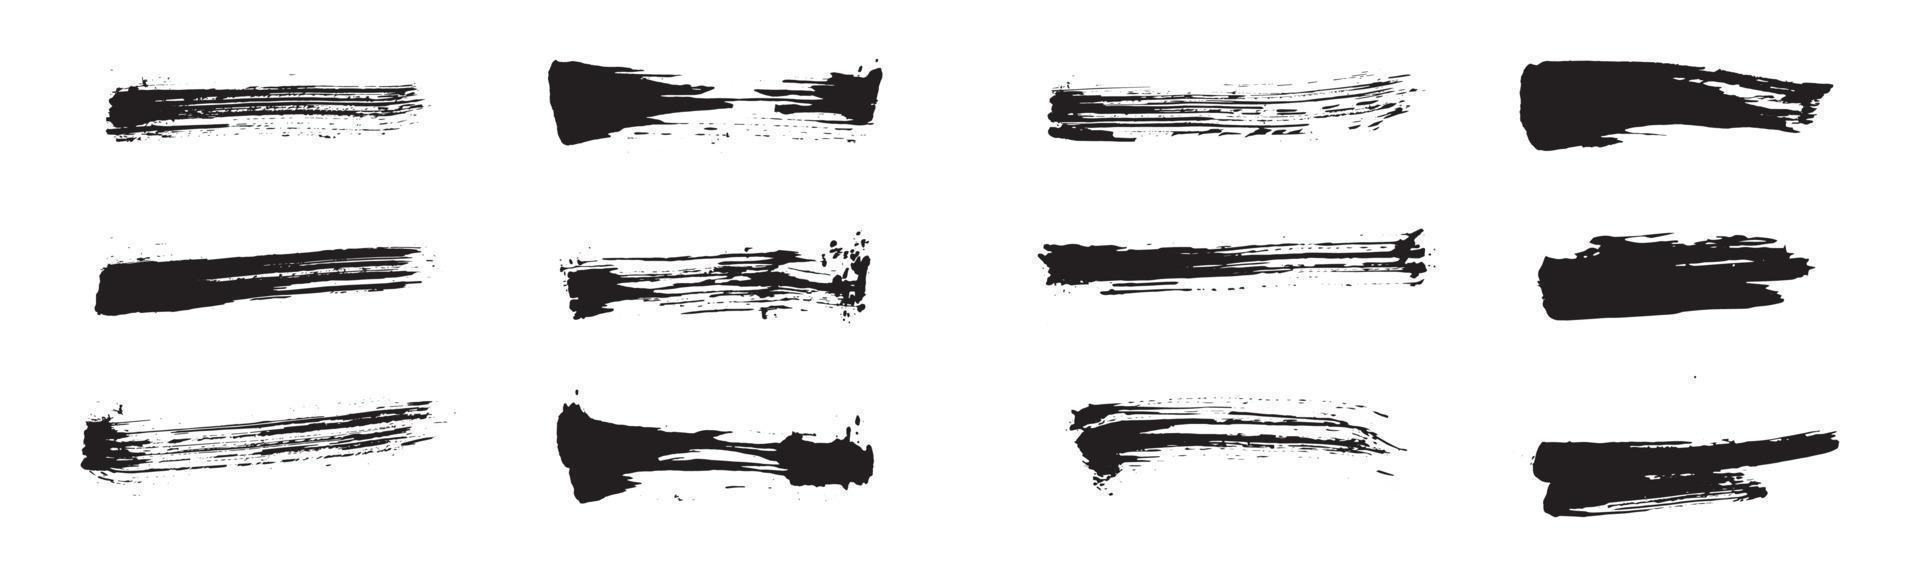 coups de pinceau abstraits de style chinois. ensemble de traits d'encre noire sur papier blanc. éléments de conception graphique pour l'espace de copie, le tiers inférieur, l'effet de texte, le pinceau vectoriel, etc. vecteur